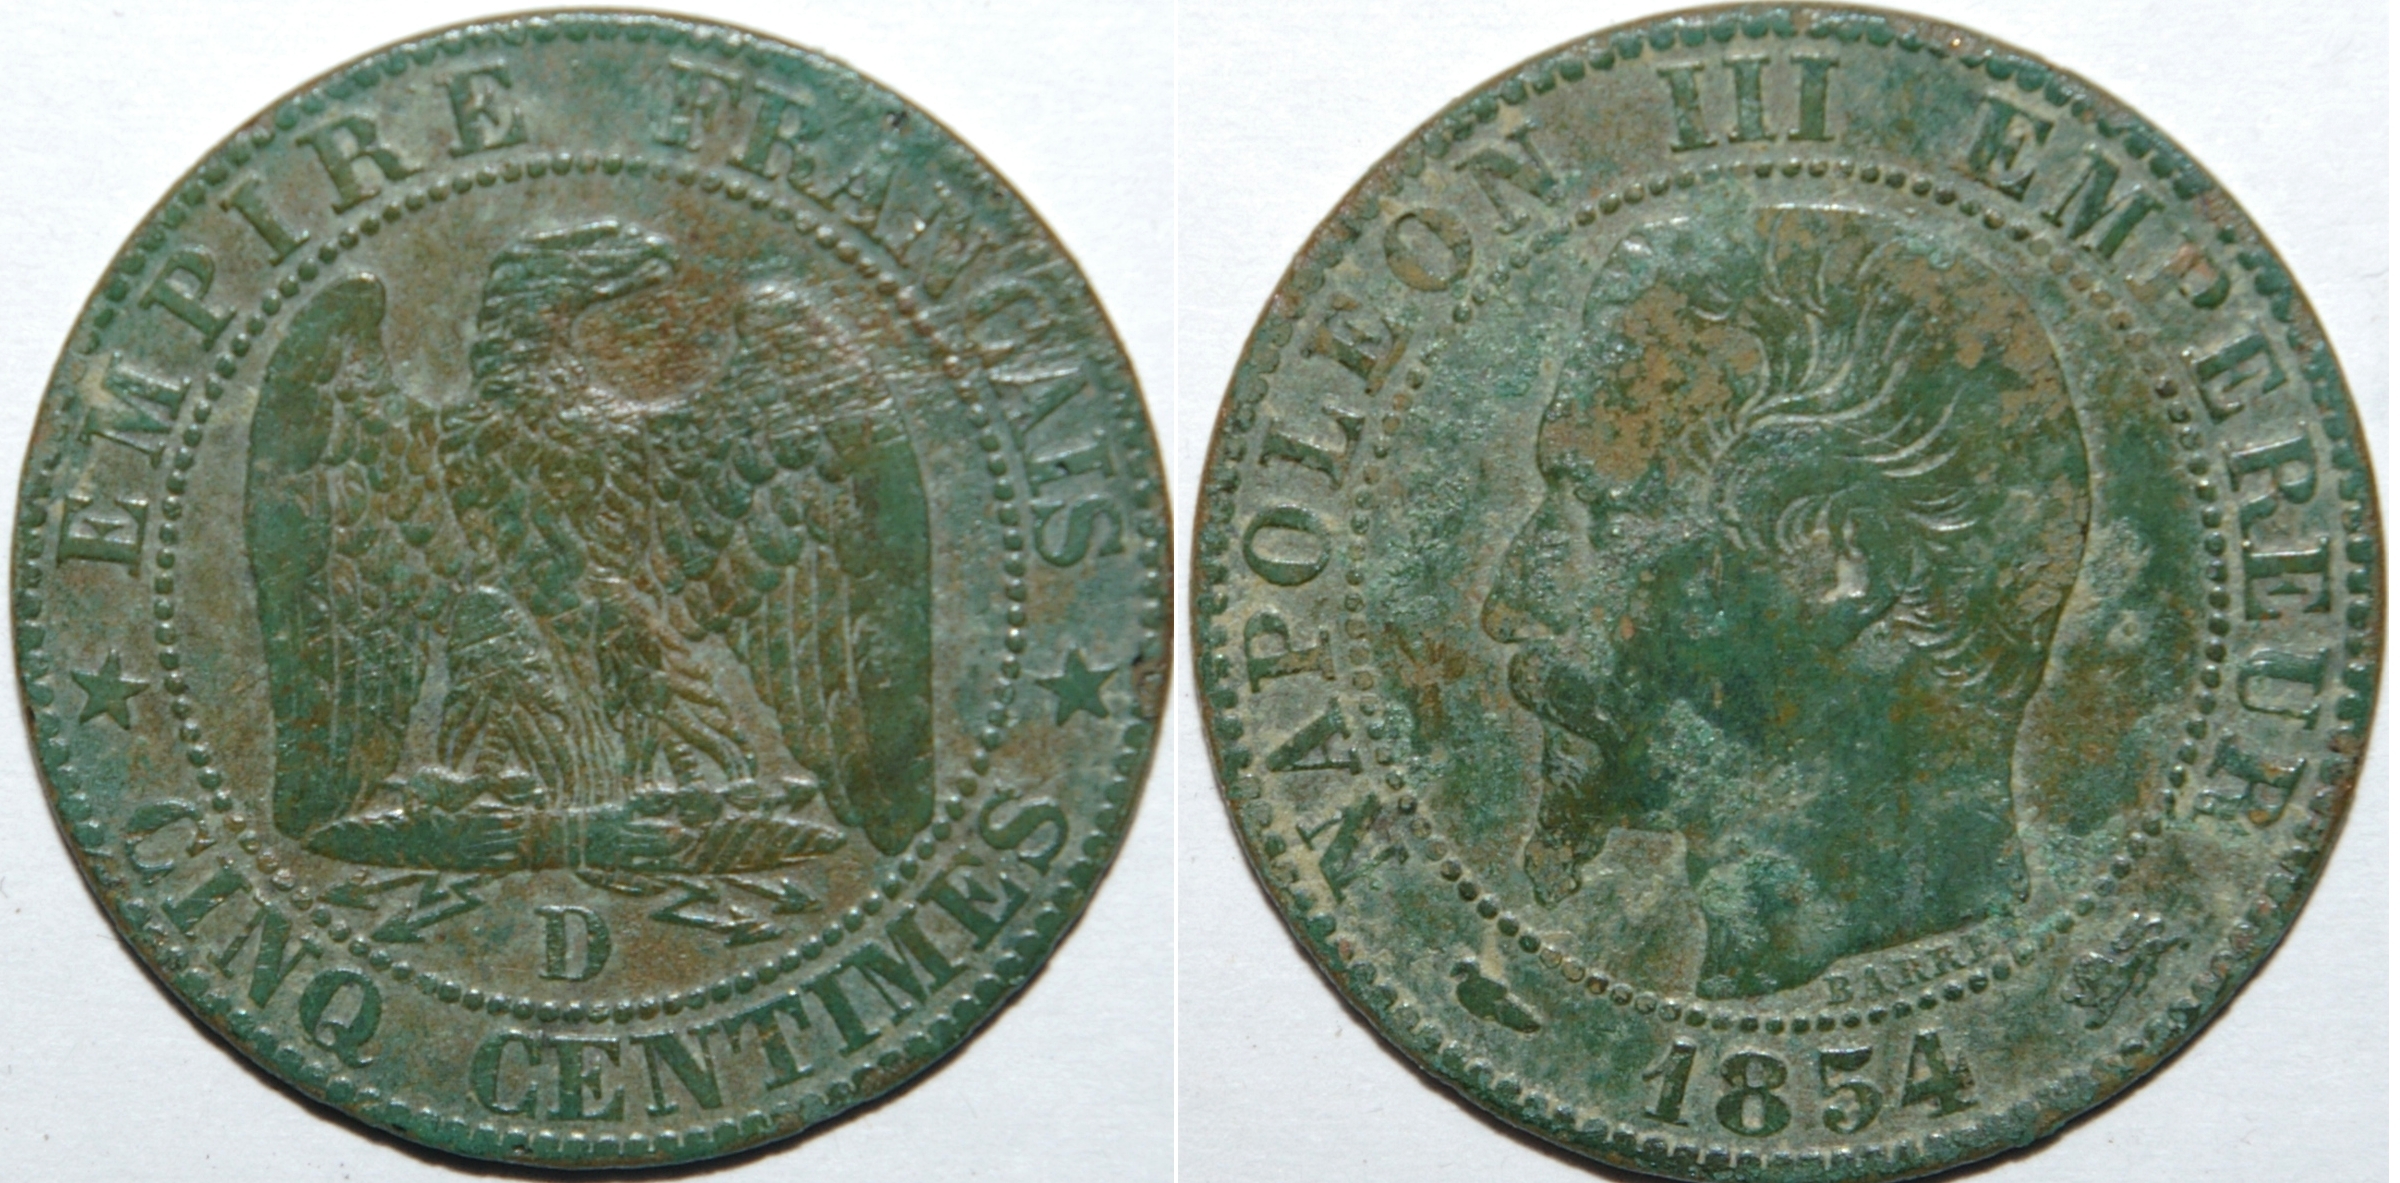 5 centimes 1854 d